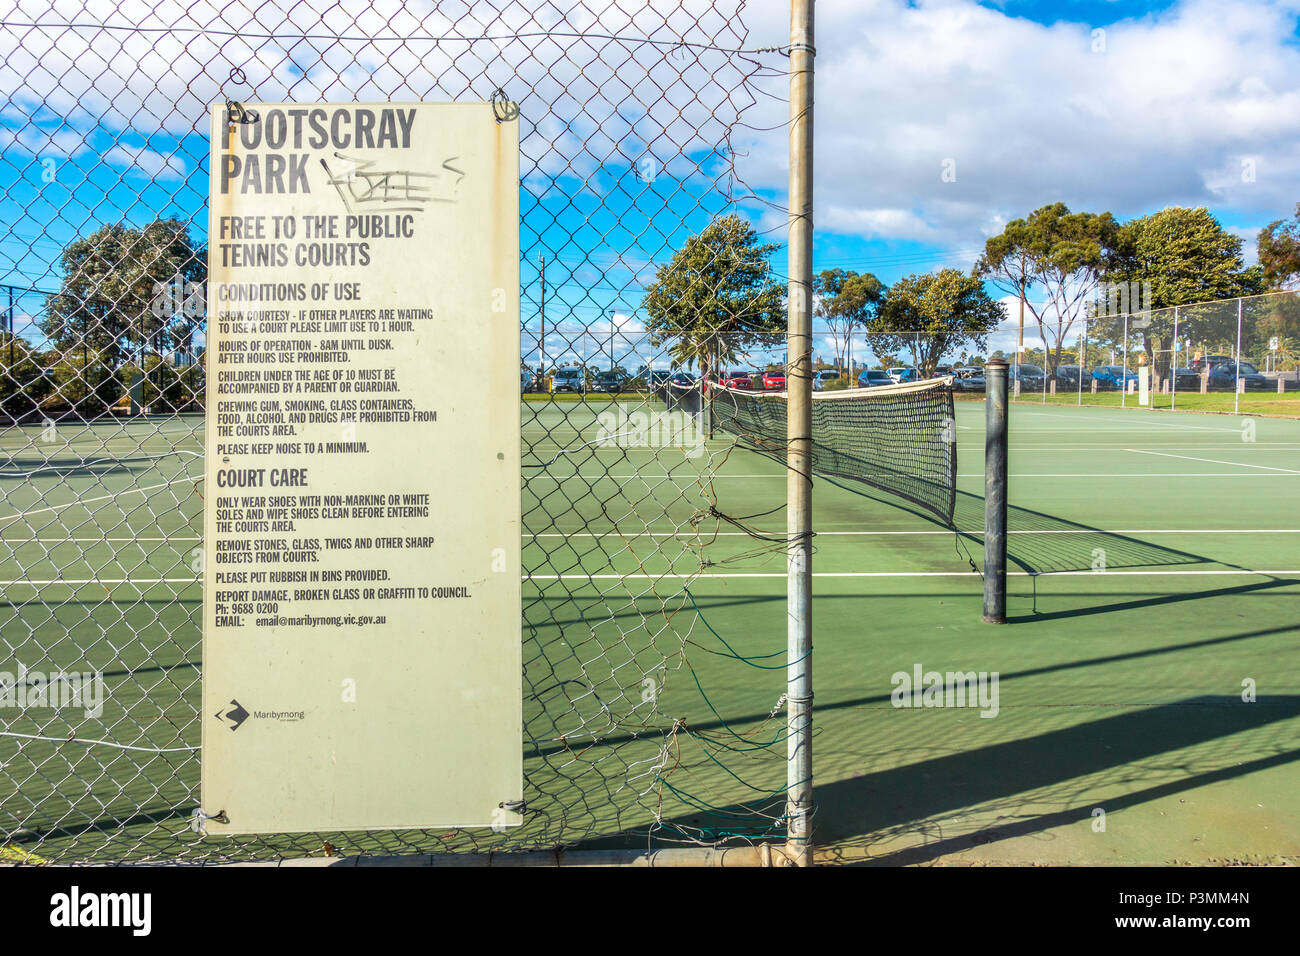 Eingang des freien Tennisplatz in Footscray Park. Melbourne, VIC, Australien Stockfoto